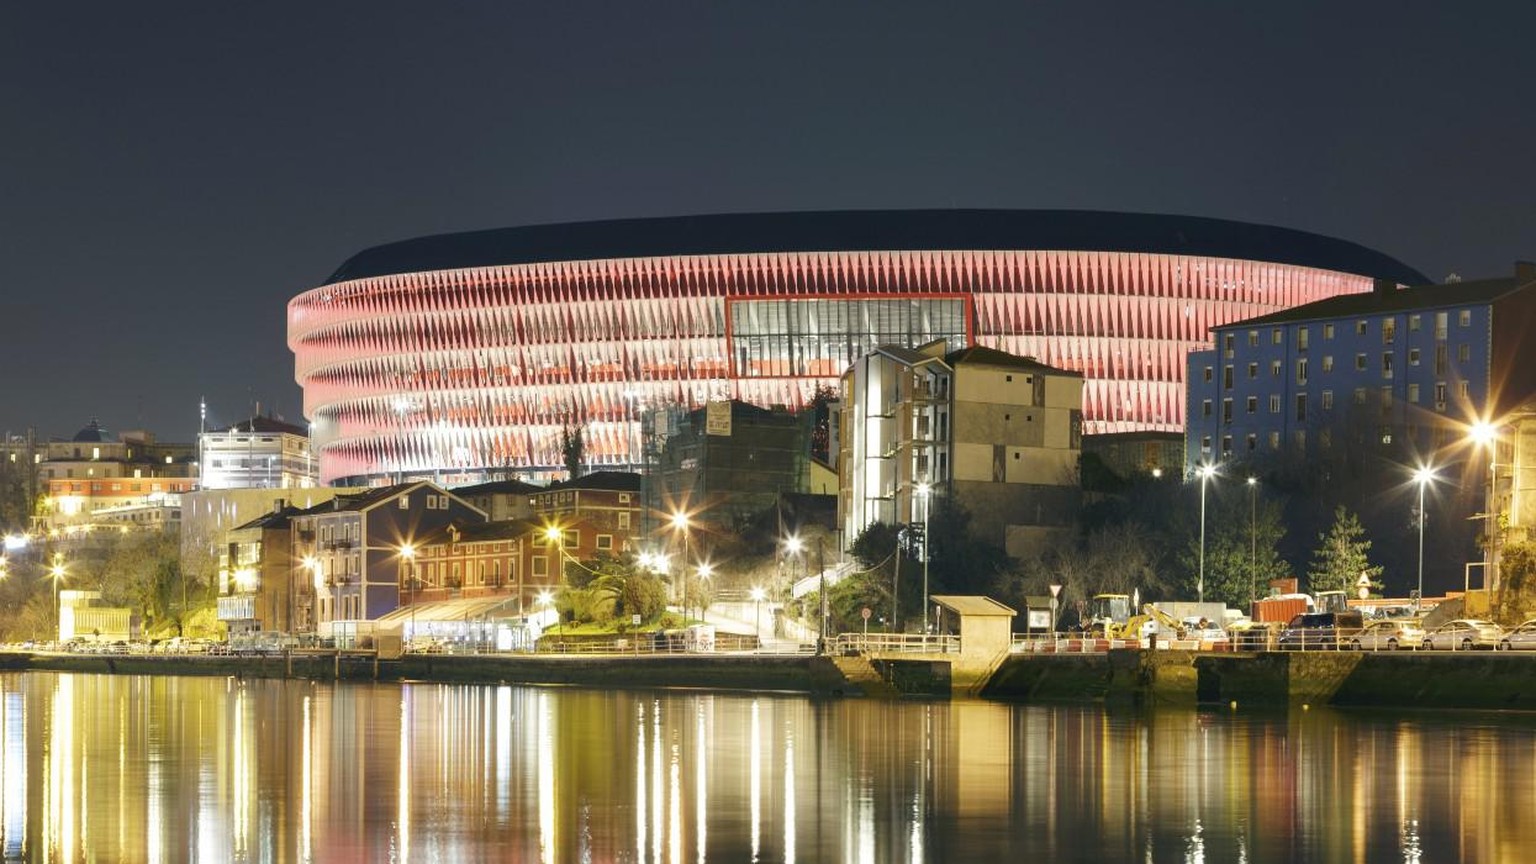 Das San Mamés von Athletic Bilbao bei Nacht.